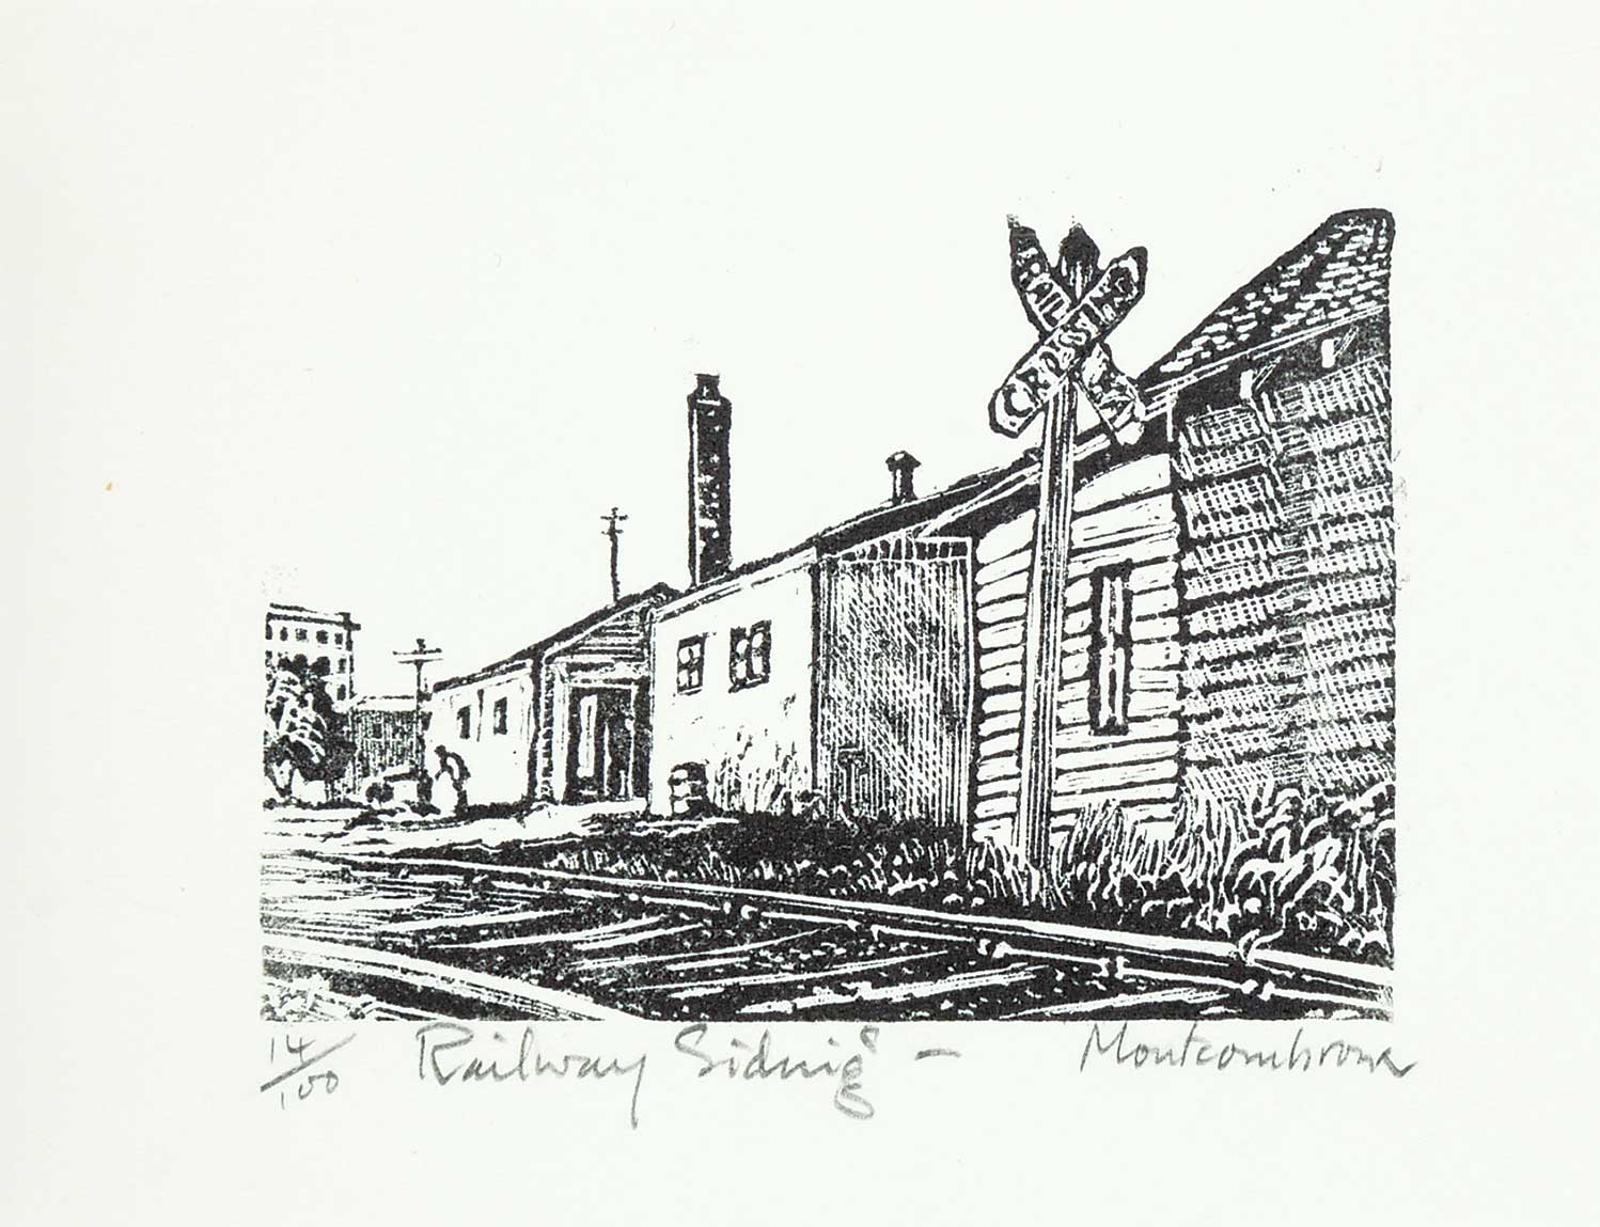 Michael Montcombroux - Railway Siding  #14/100